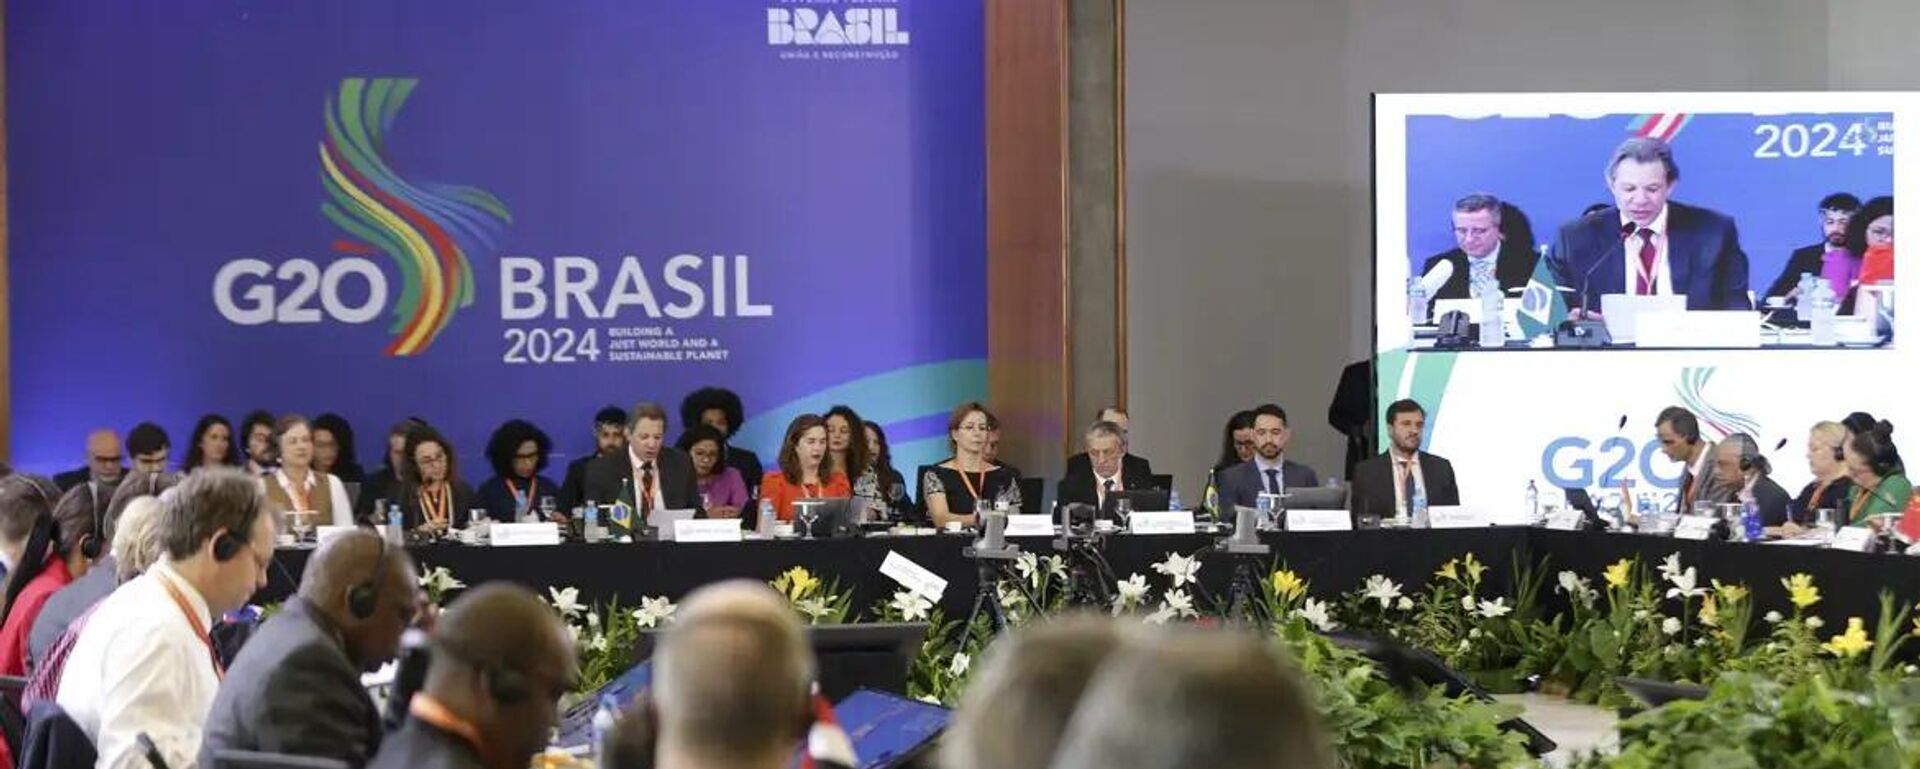 Encontro de autoridades do G20, durante evento no Rio de Janeiro - Sputnik Brasil, 1920, 22.02.2024